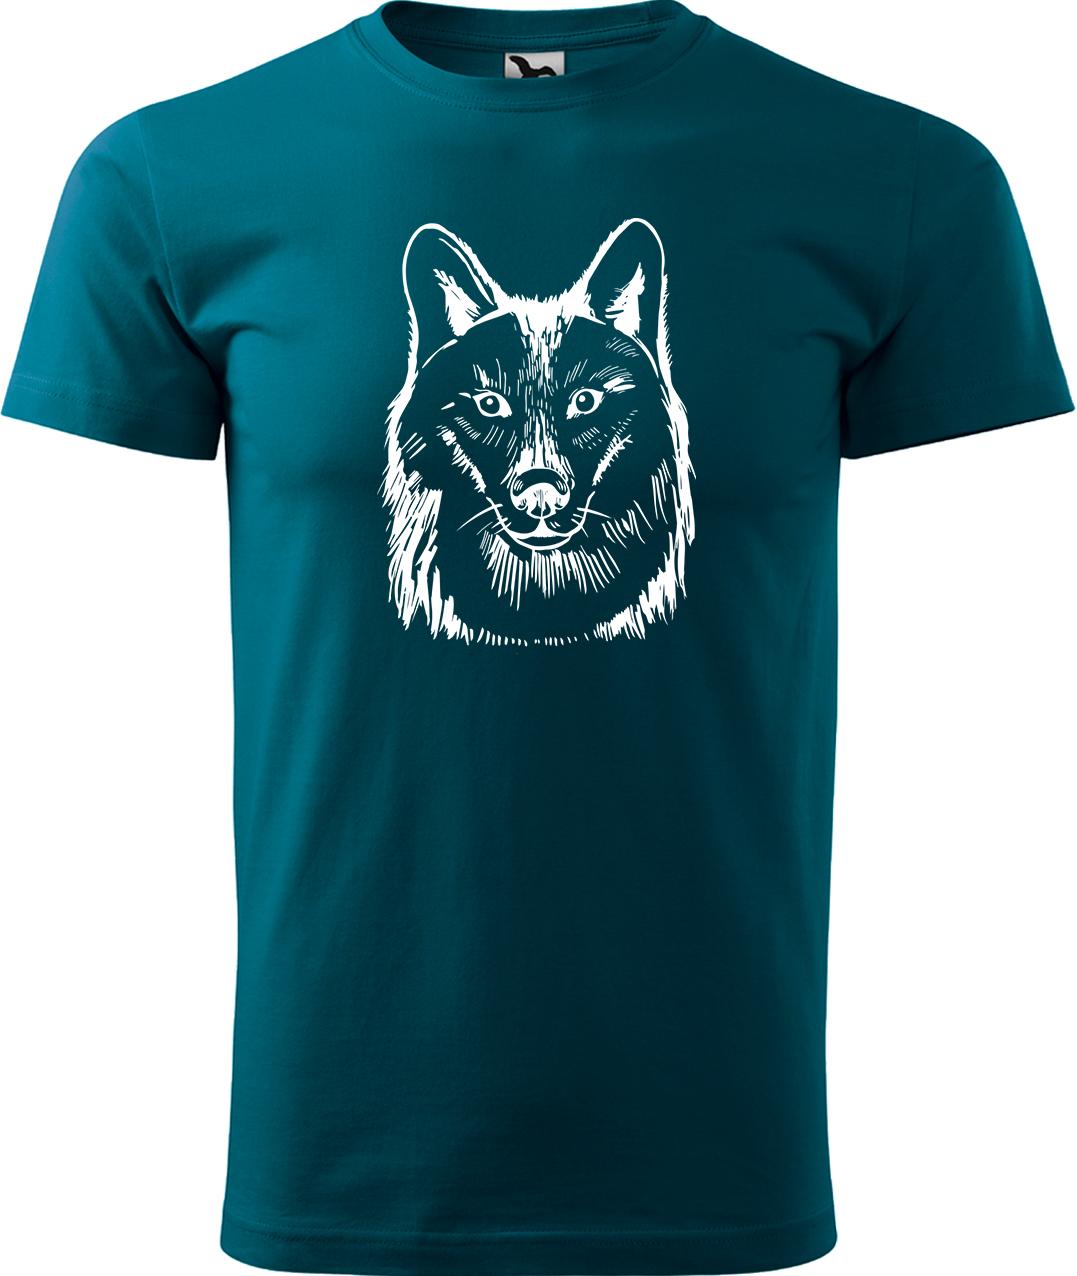 Pánské tričko s vlkem - Kresba vlka Velikost: XL, Barva: Petrolejová (93), Střih: pánský